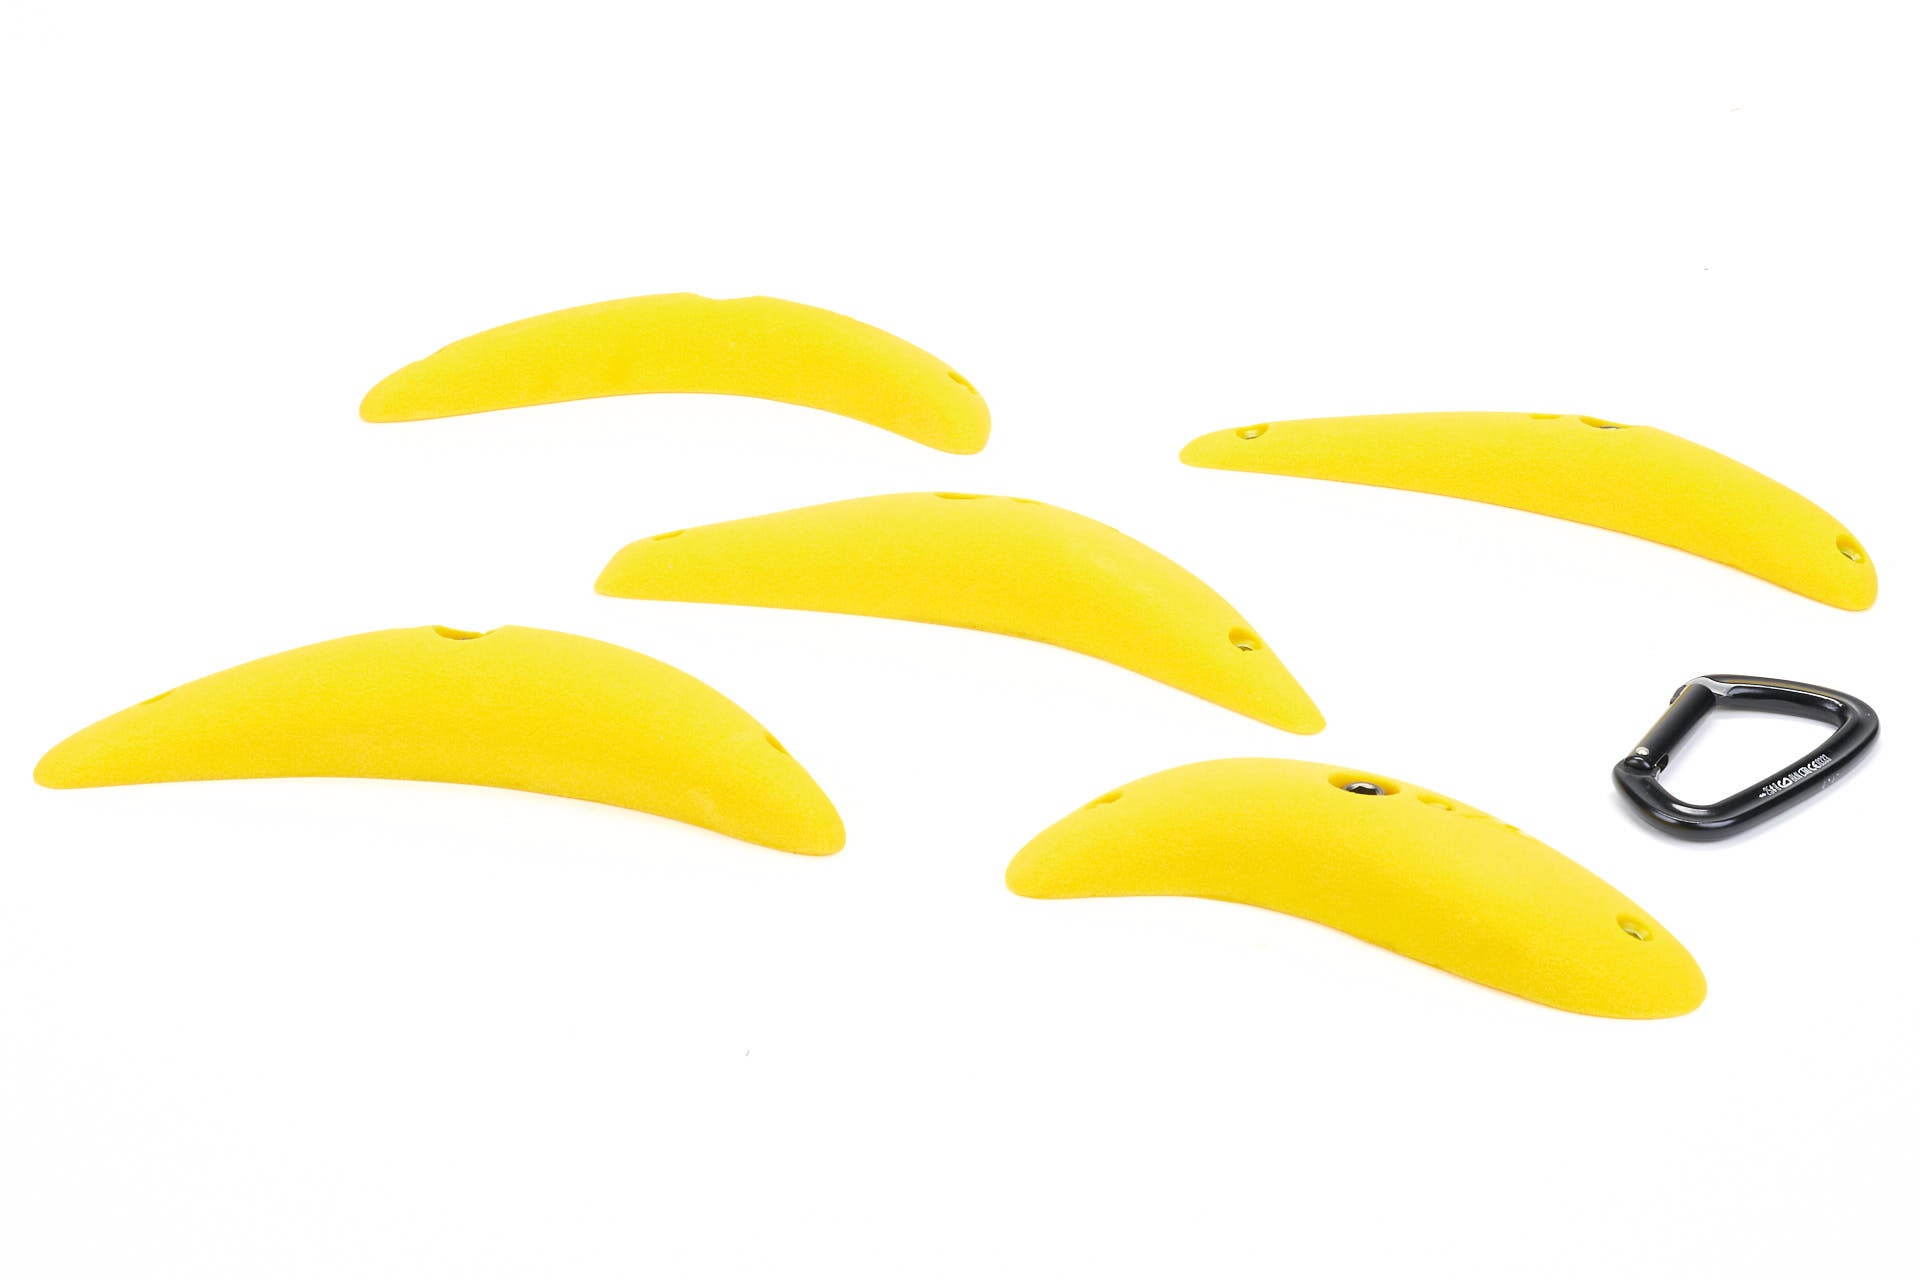 Bananas - Medium